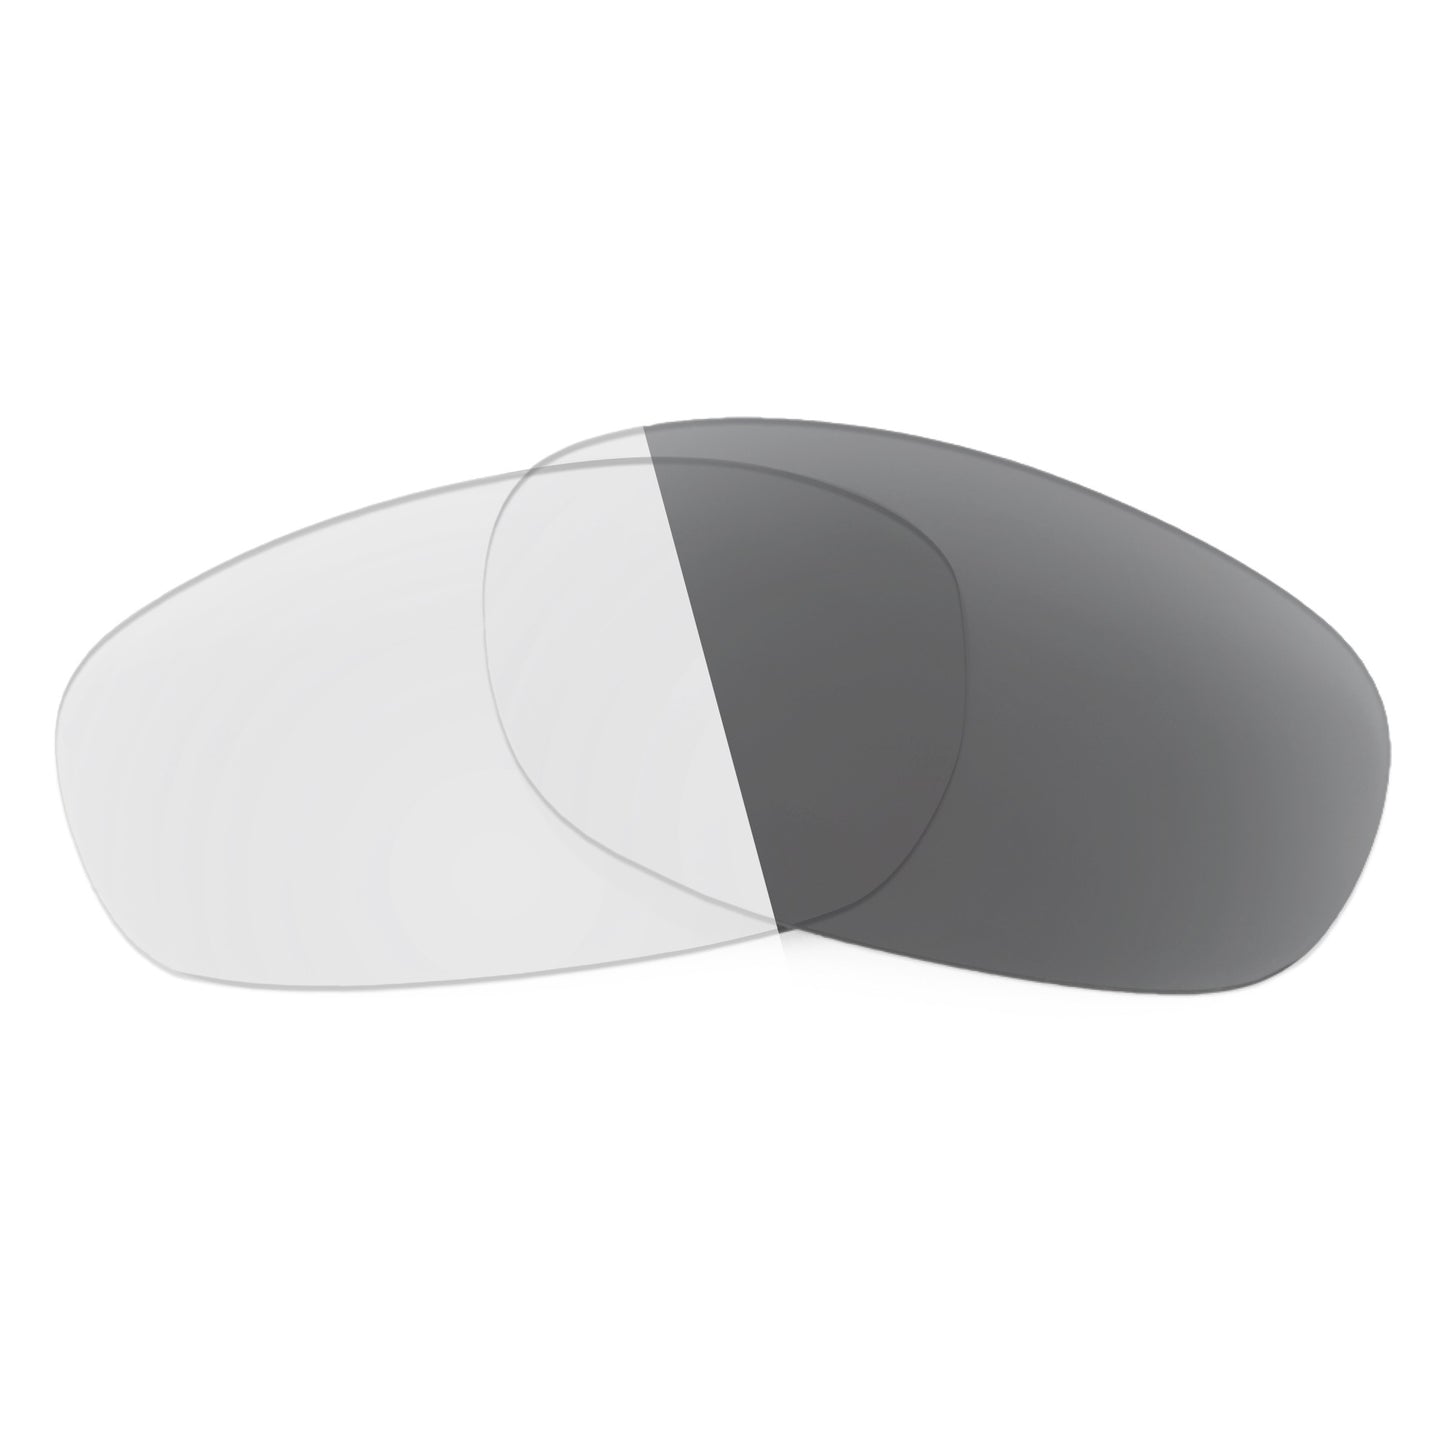 Revant replacement lenses for Costa Stringer Non-Polarized Adapt Gray Photochromic